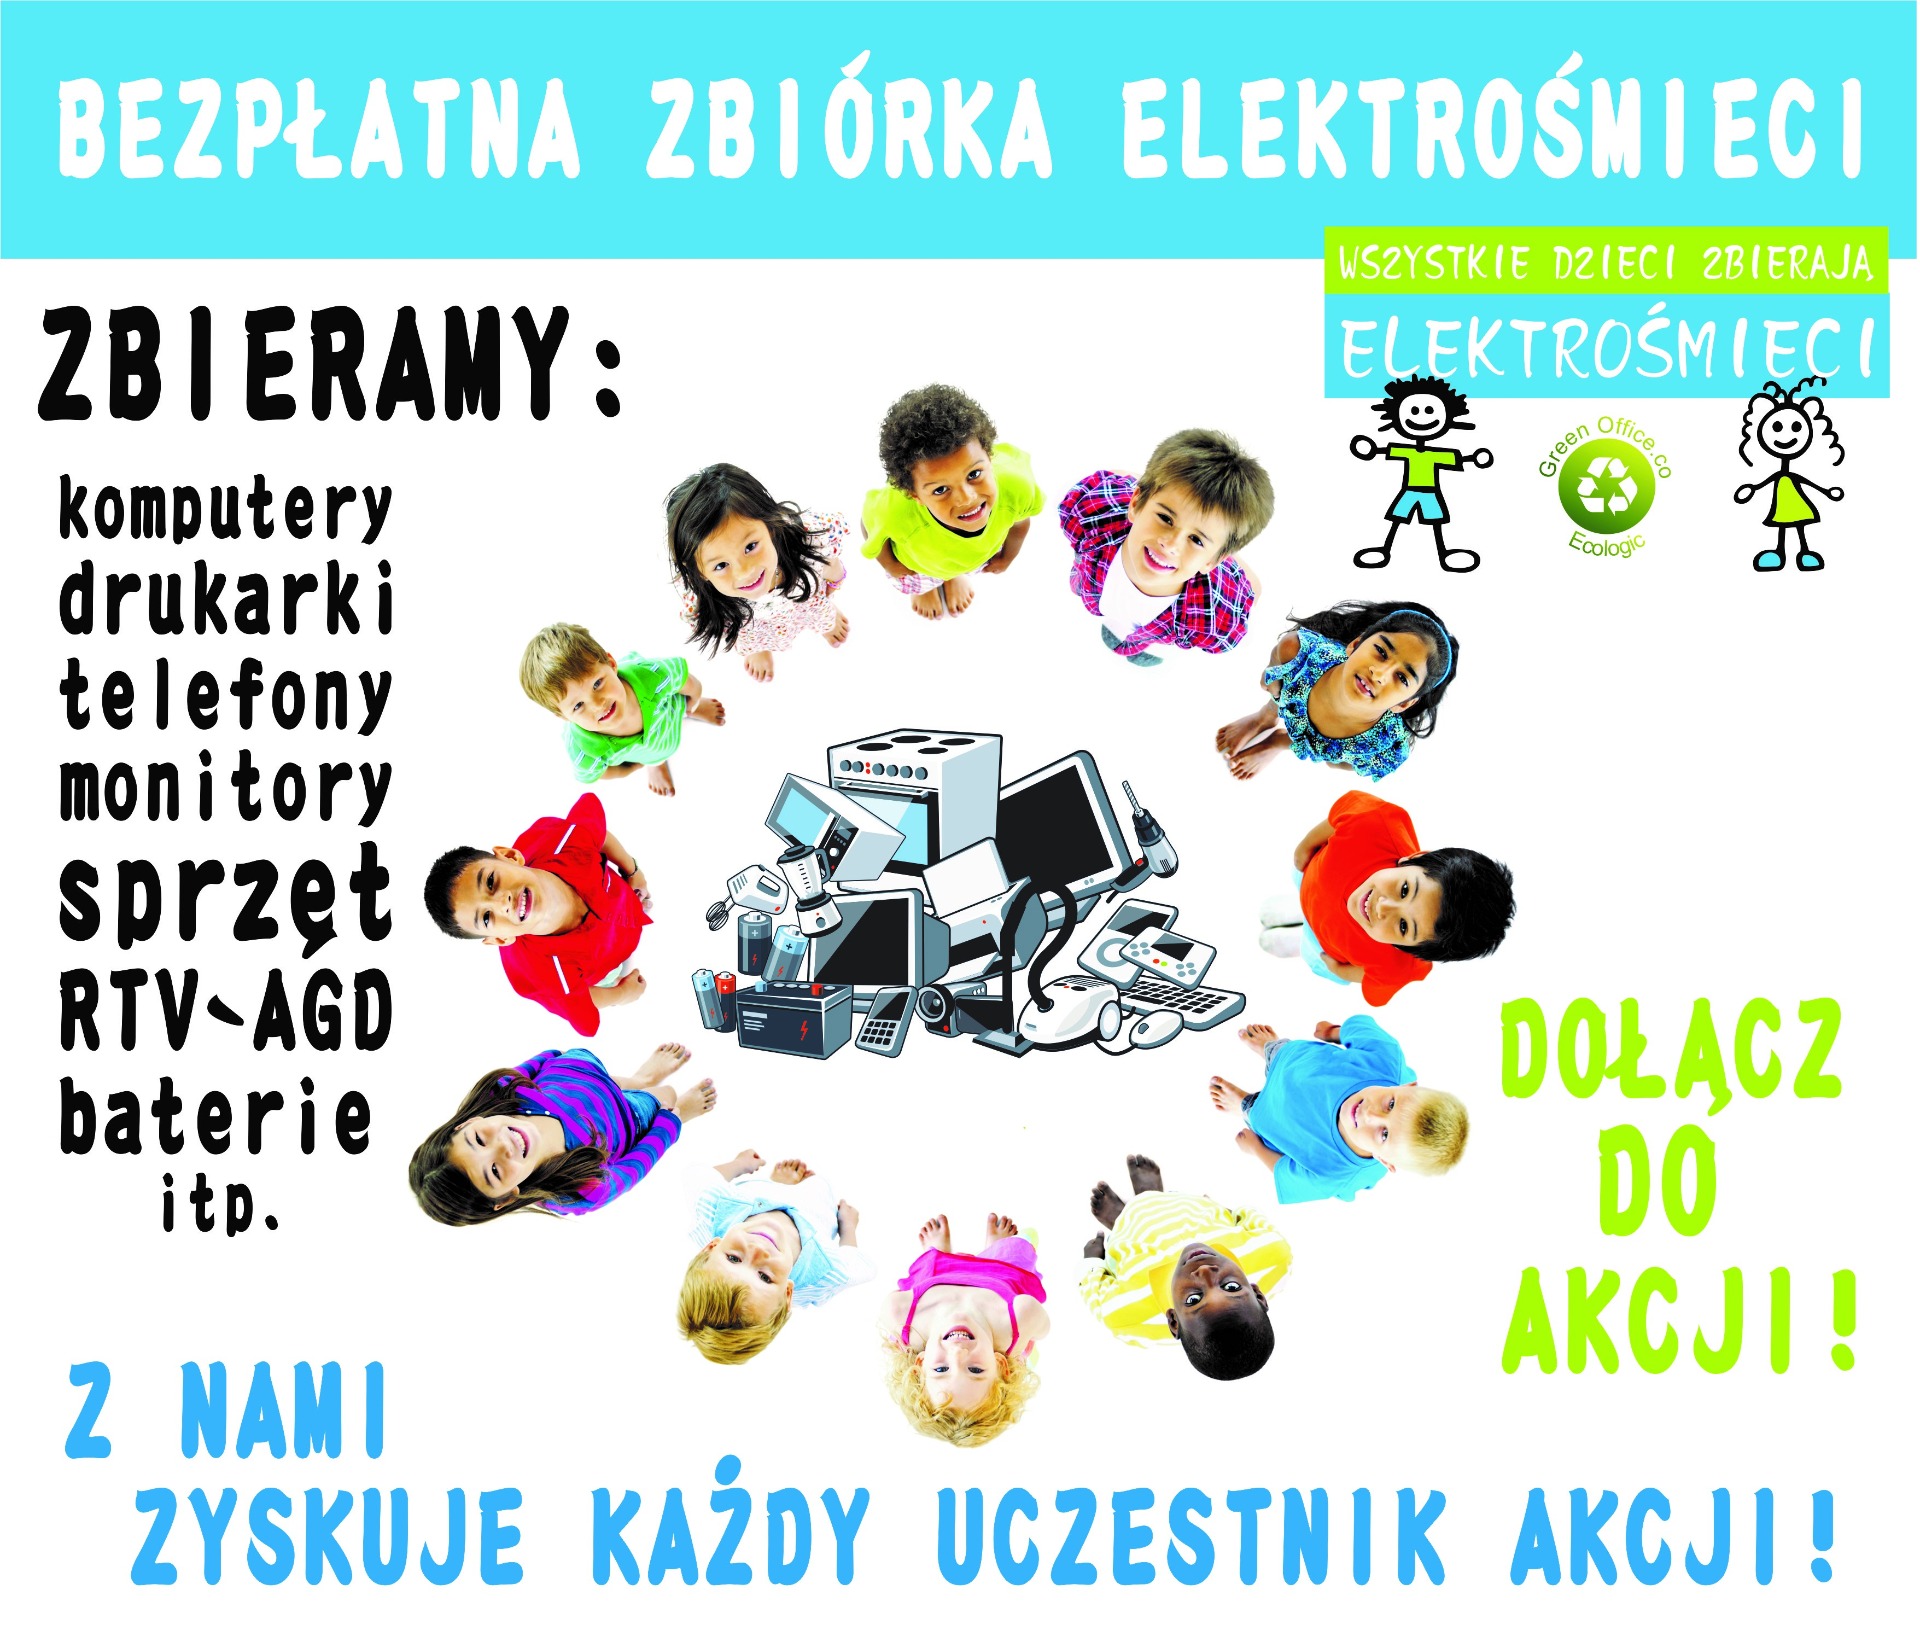 Akcja Ekologiczna "Wszystkie dzieci zbierają elektrośmieci". - Obrazek 1